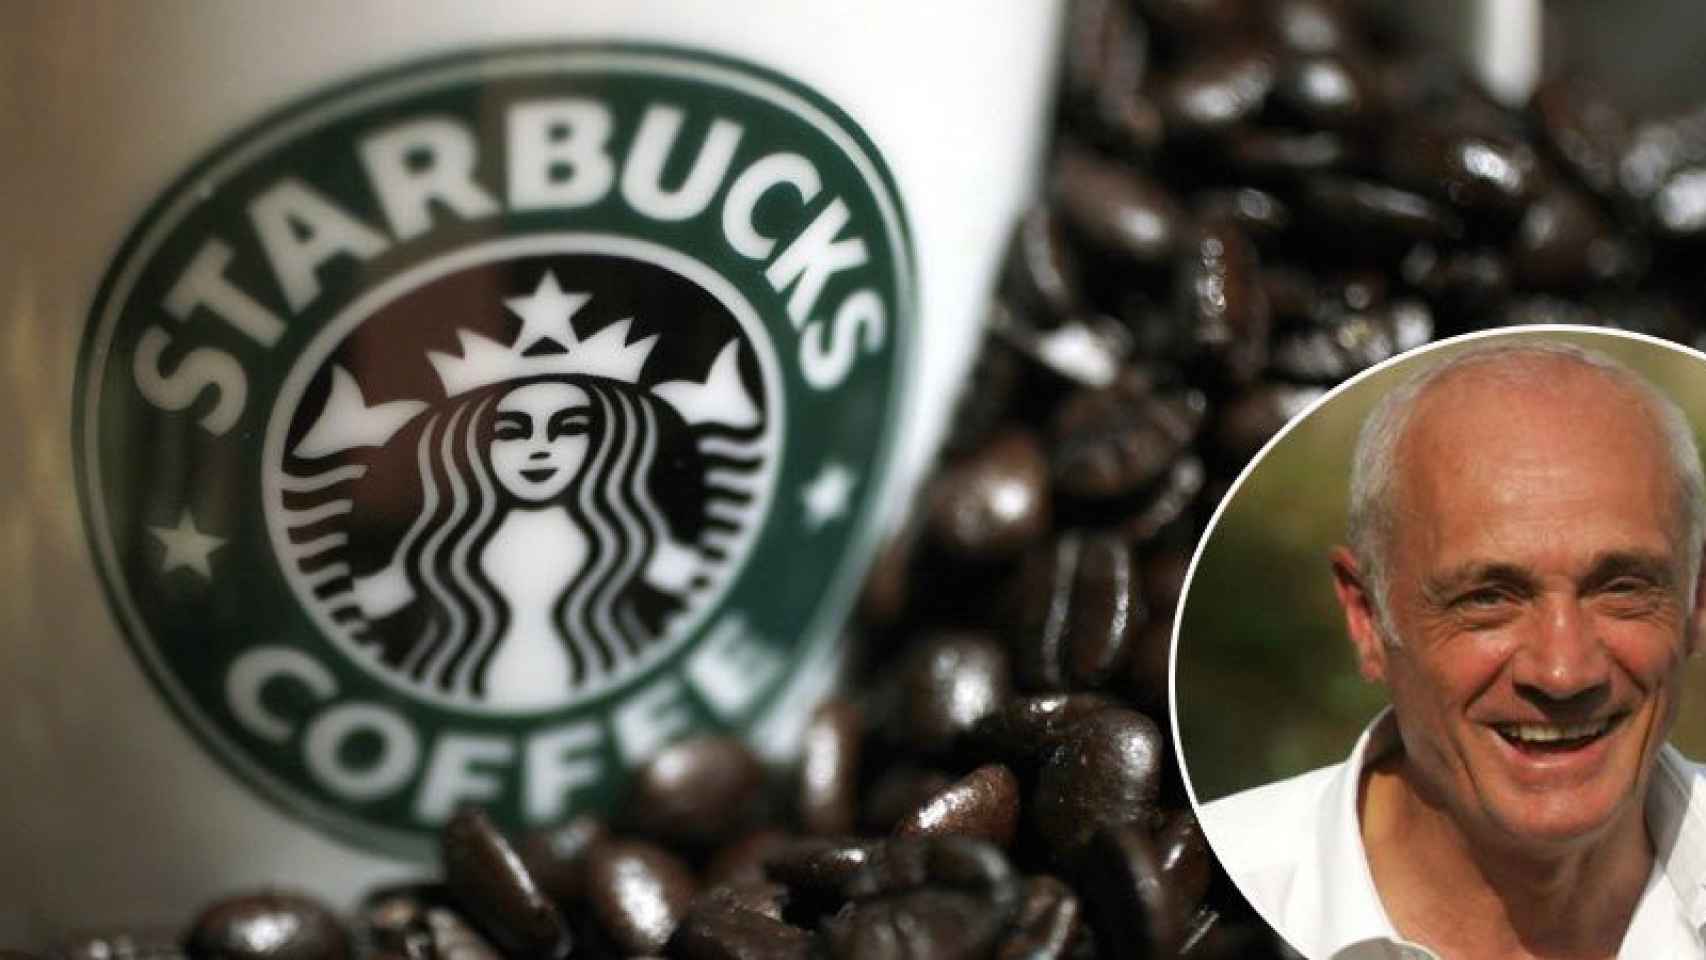 Antonio Percassi, propietario de la firma de cosméticos Kiko, será el dueño de los establecimientos Starbucks en Italia.C